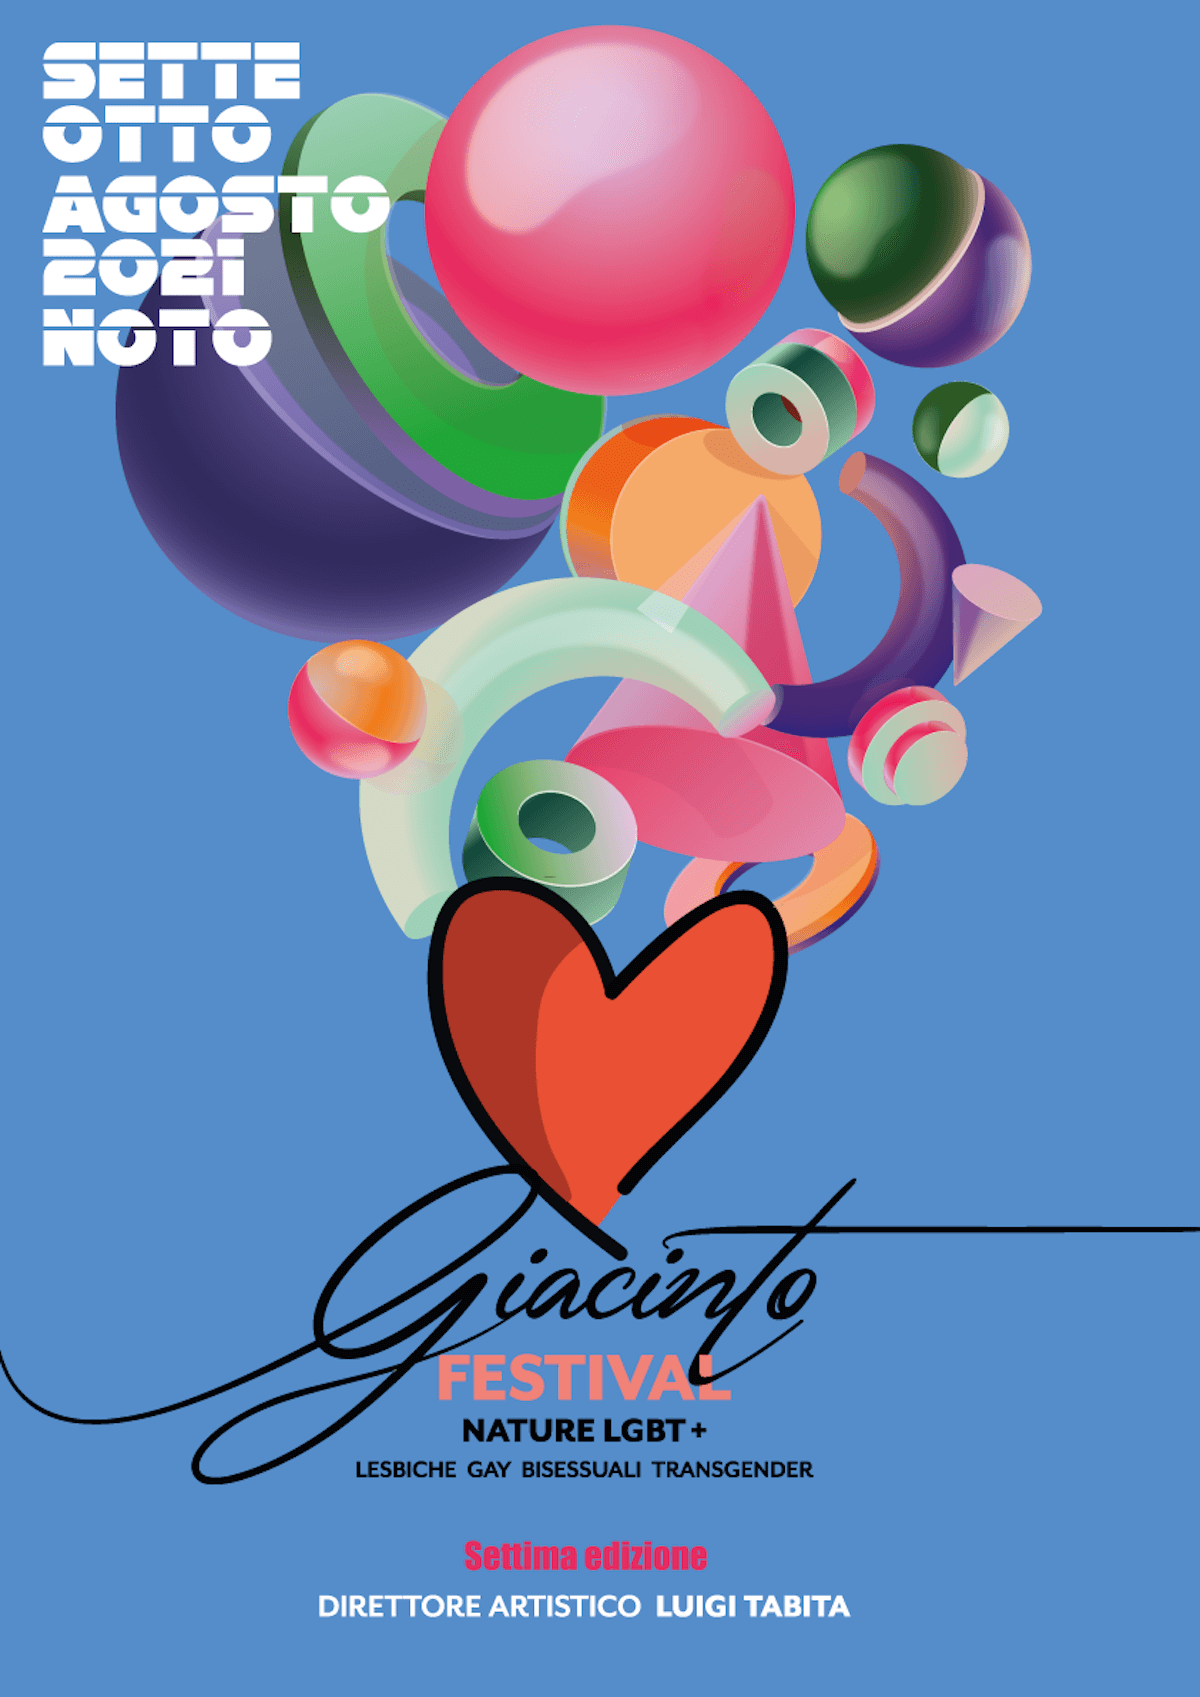 Giacinto Festival 2021, gli ospiti della 7a edizione: da Selvaggia Lucarelli a Gianmarco Negri - locandina1 - Gay.it